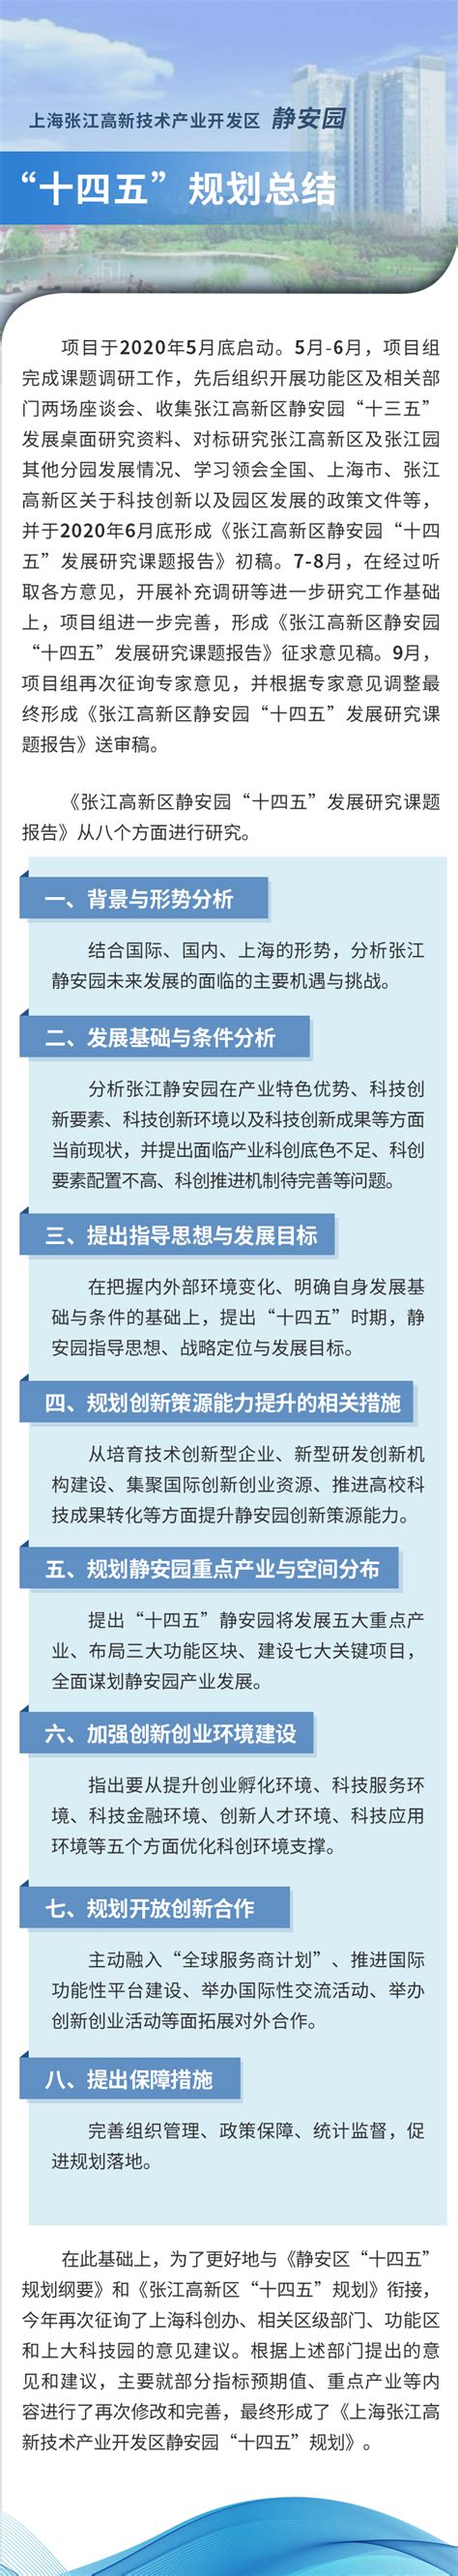 上海张江高新技术产业开发区静安园“十四五”规划图片解读